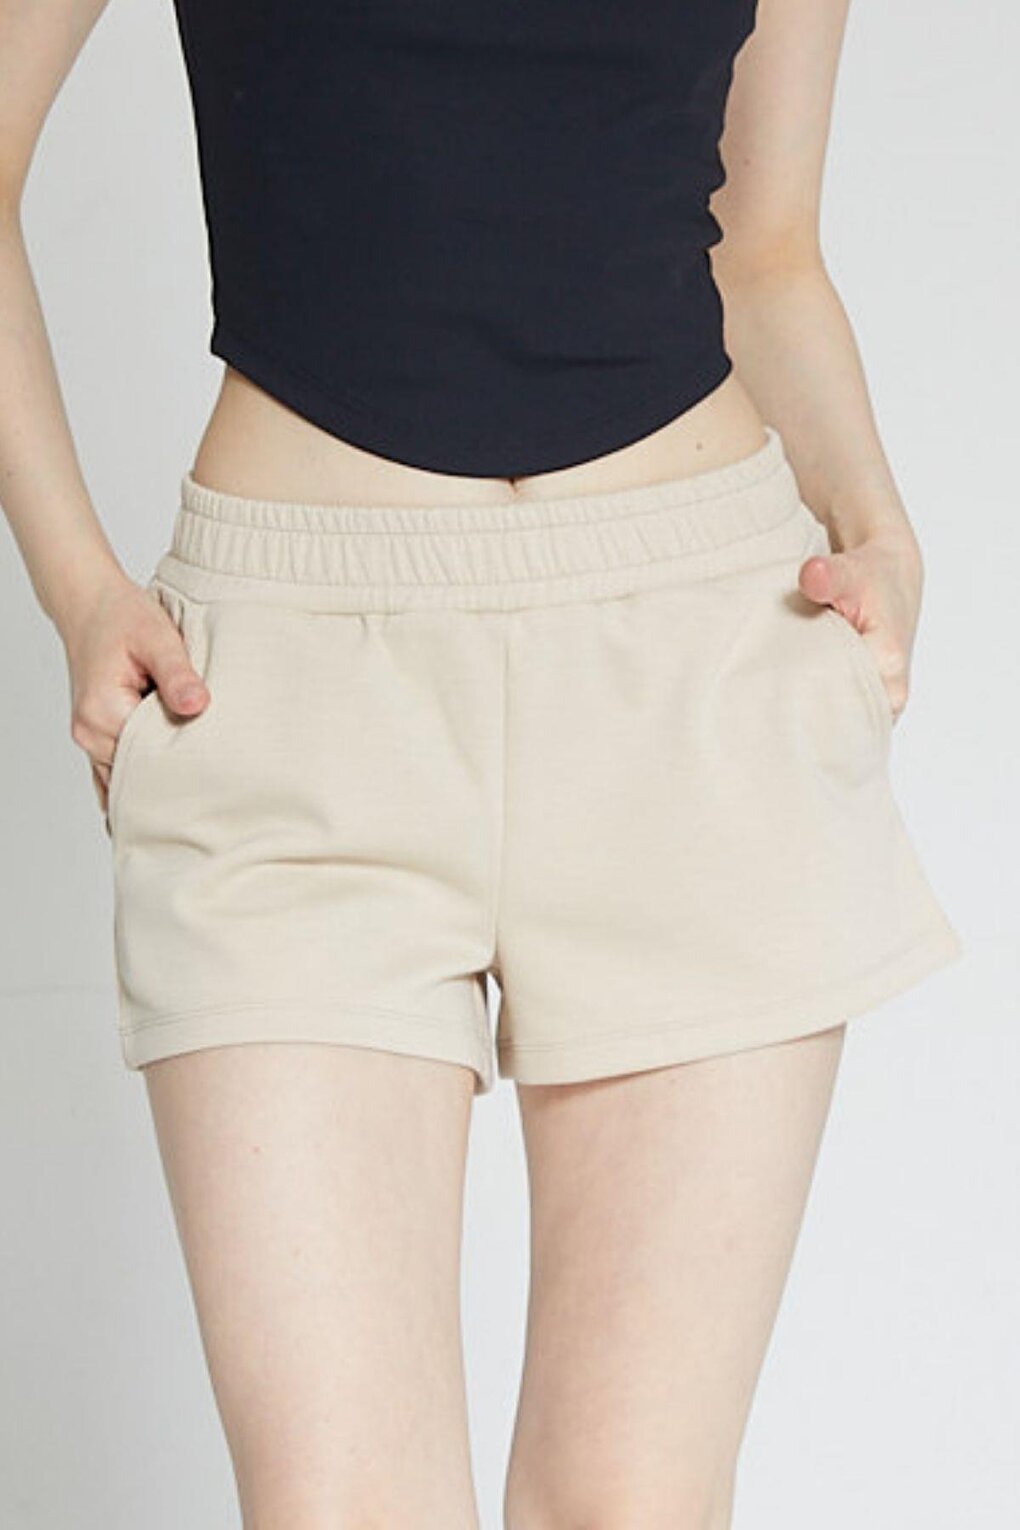 цена Бежевые женские короткие шорты Soft Touch Chandraswear